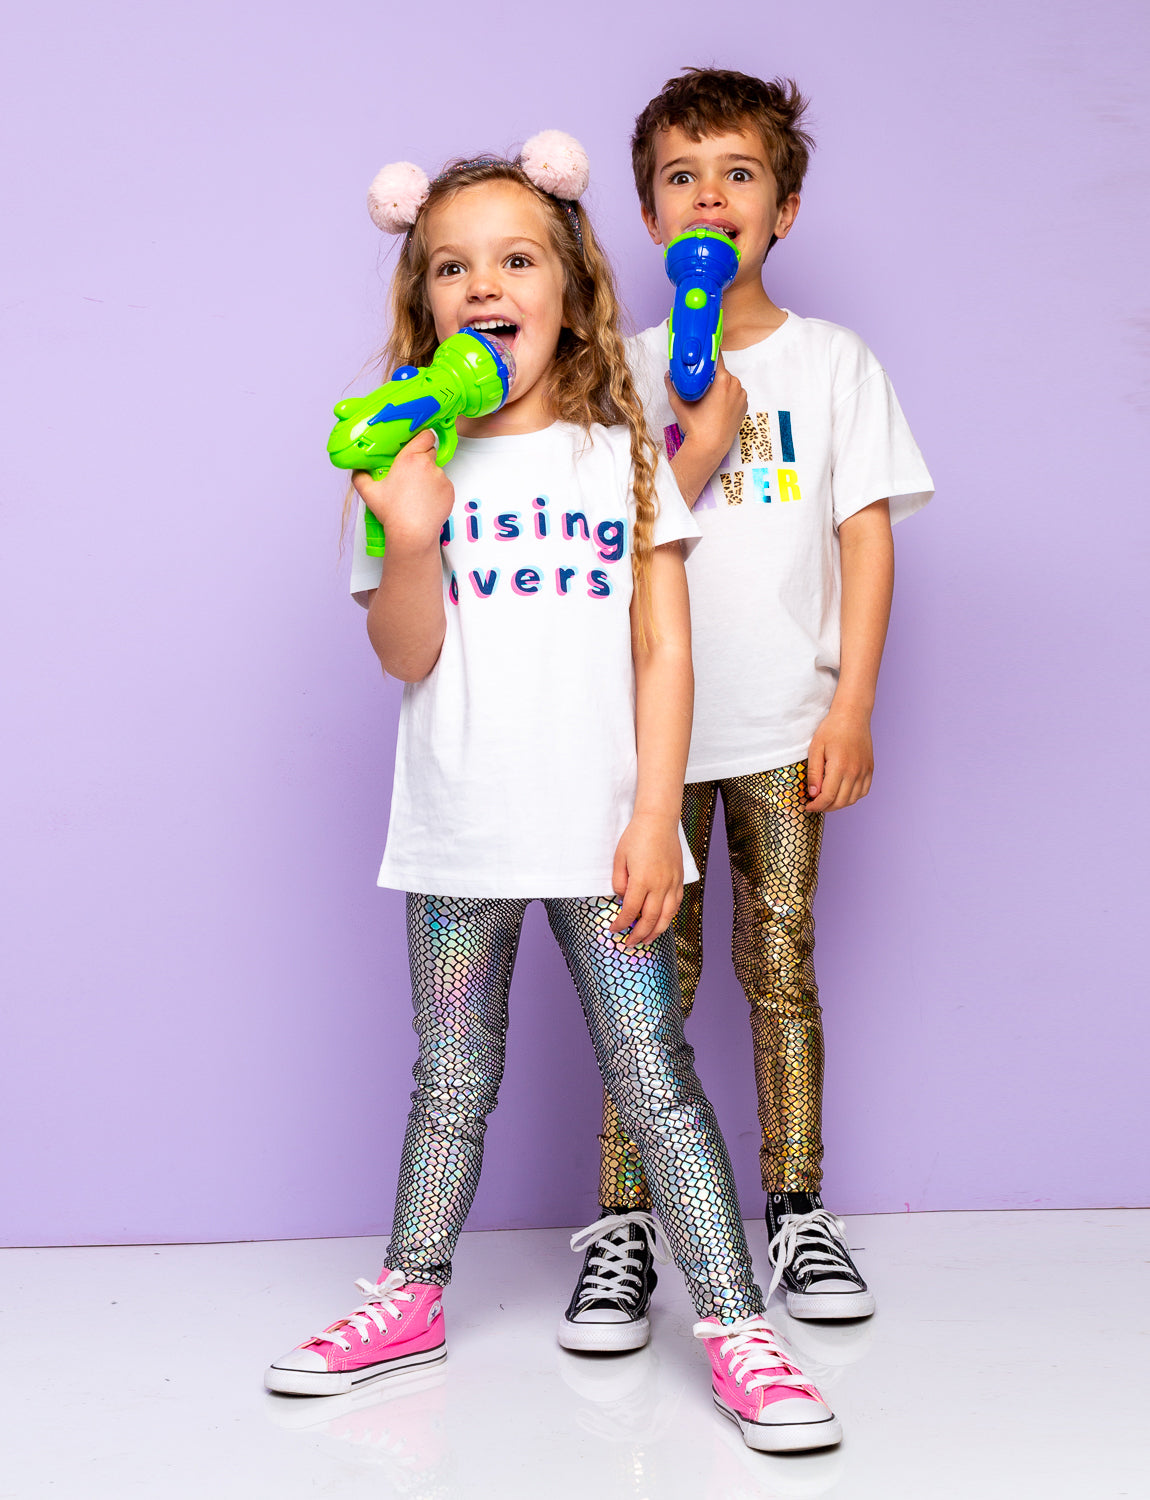 Boy and girl wearing holographic snakeskin leggings holding plastic light up guns.